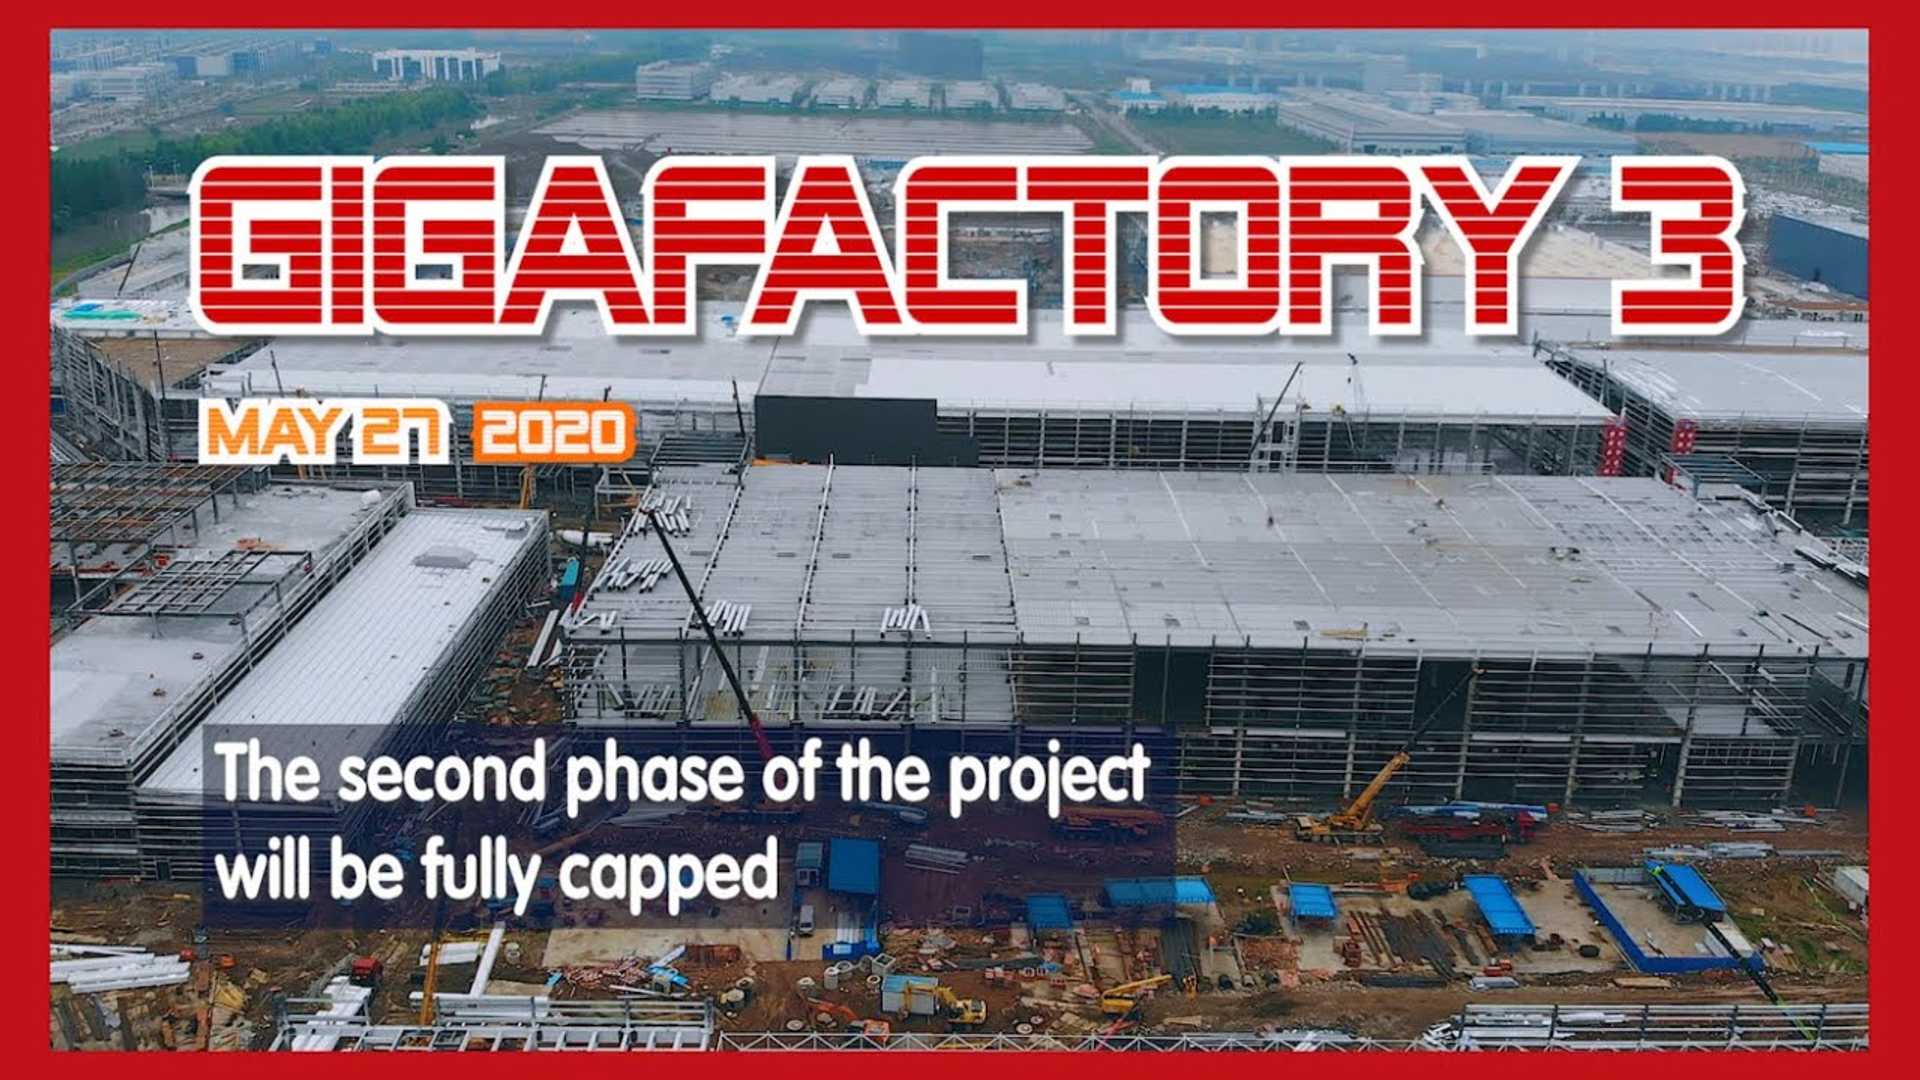 Тесла Гига Шанхай Строительство Строительство 27 мая 2020 года: видео